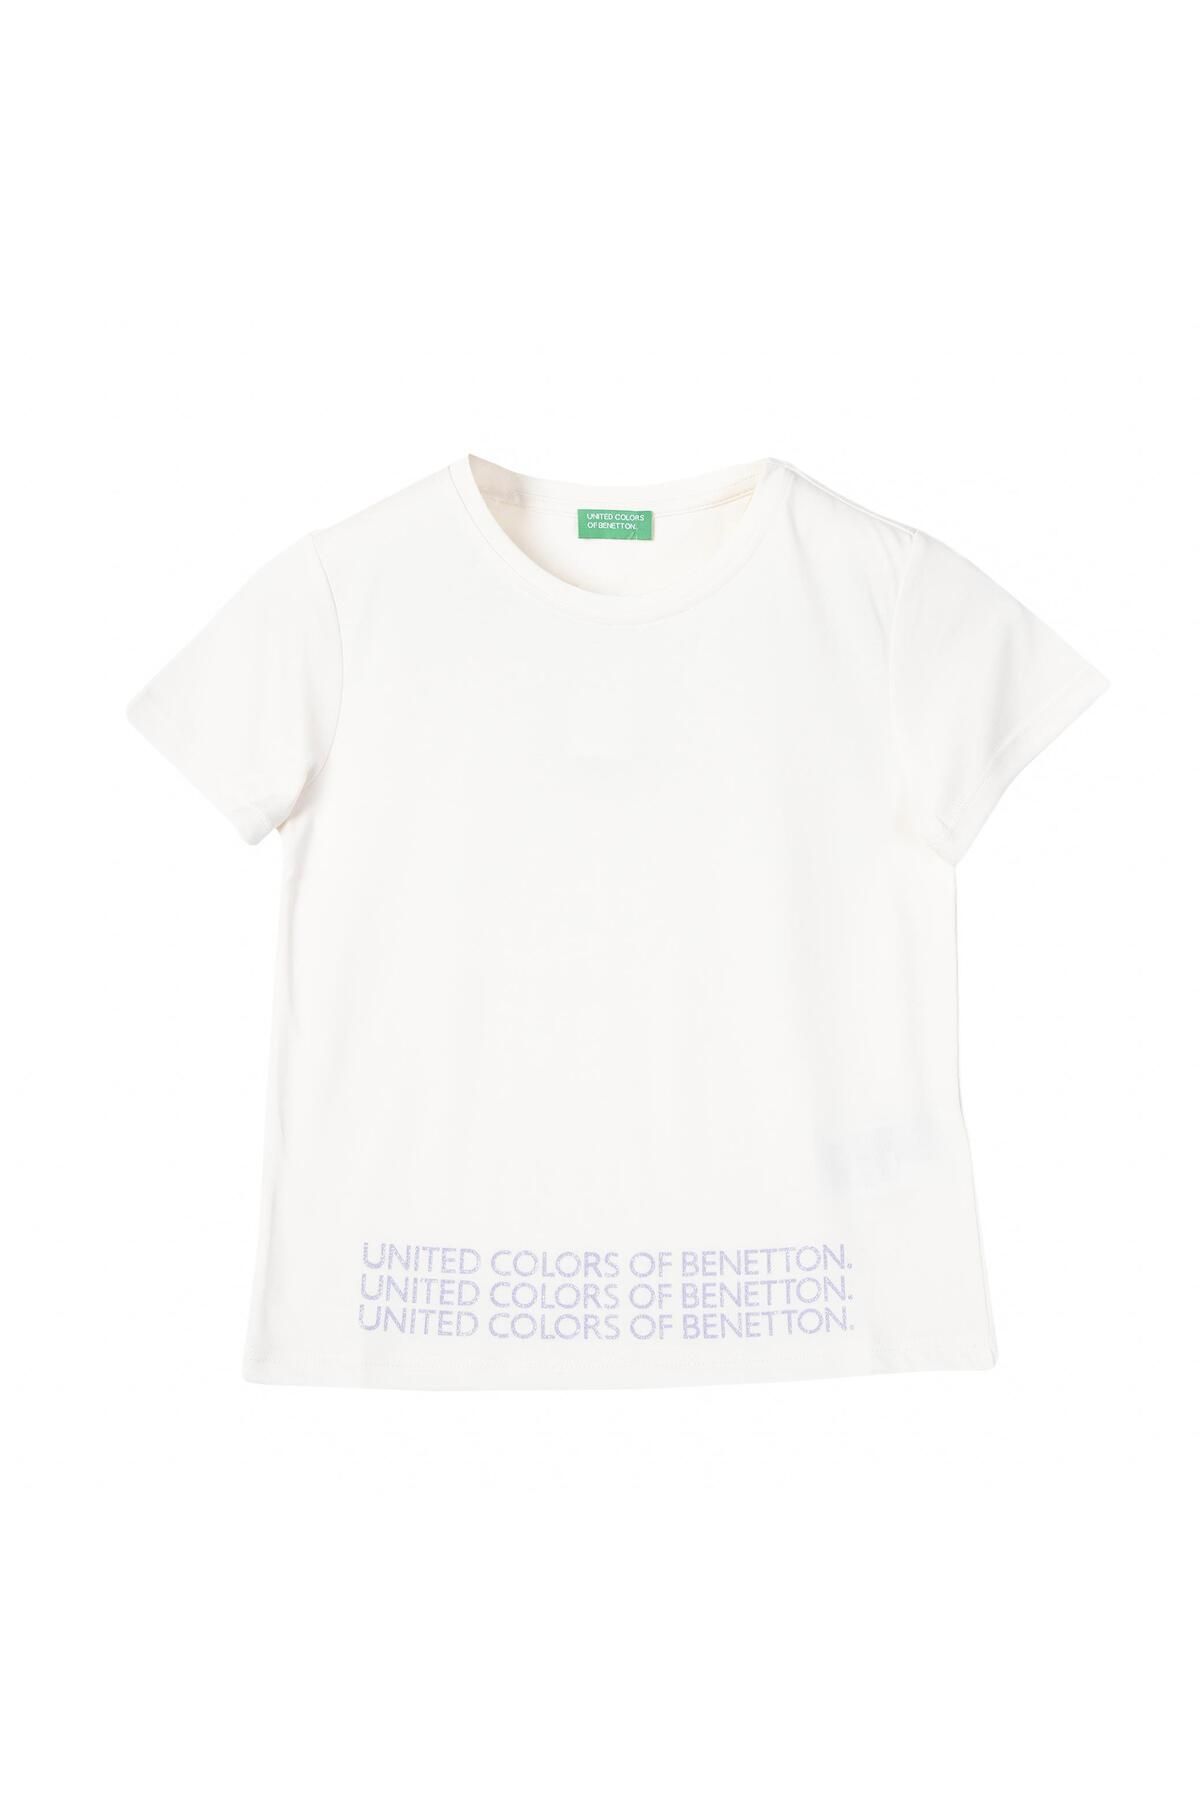 Benetton United Colors of Benetton Kız Çocuk Beyaz T-shirt BNT-G21286